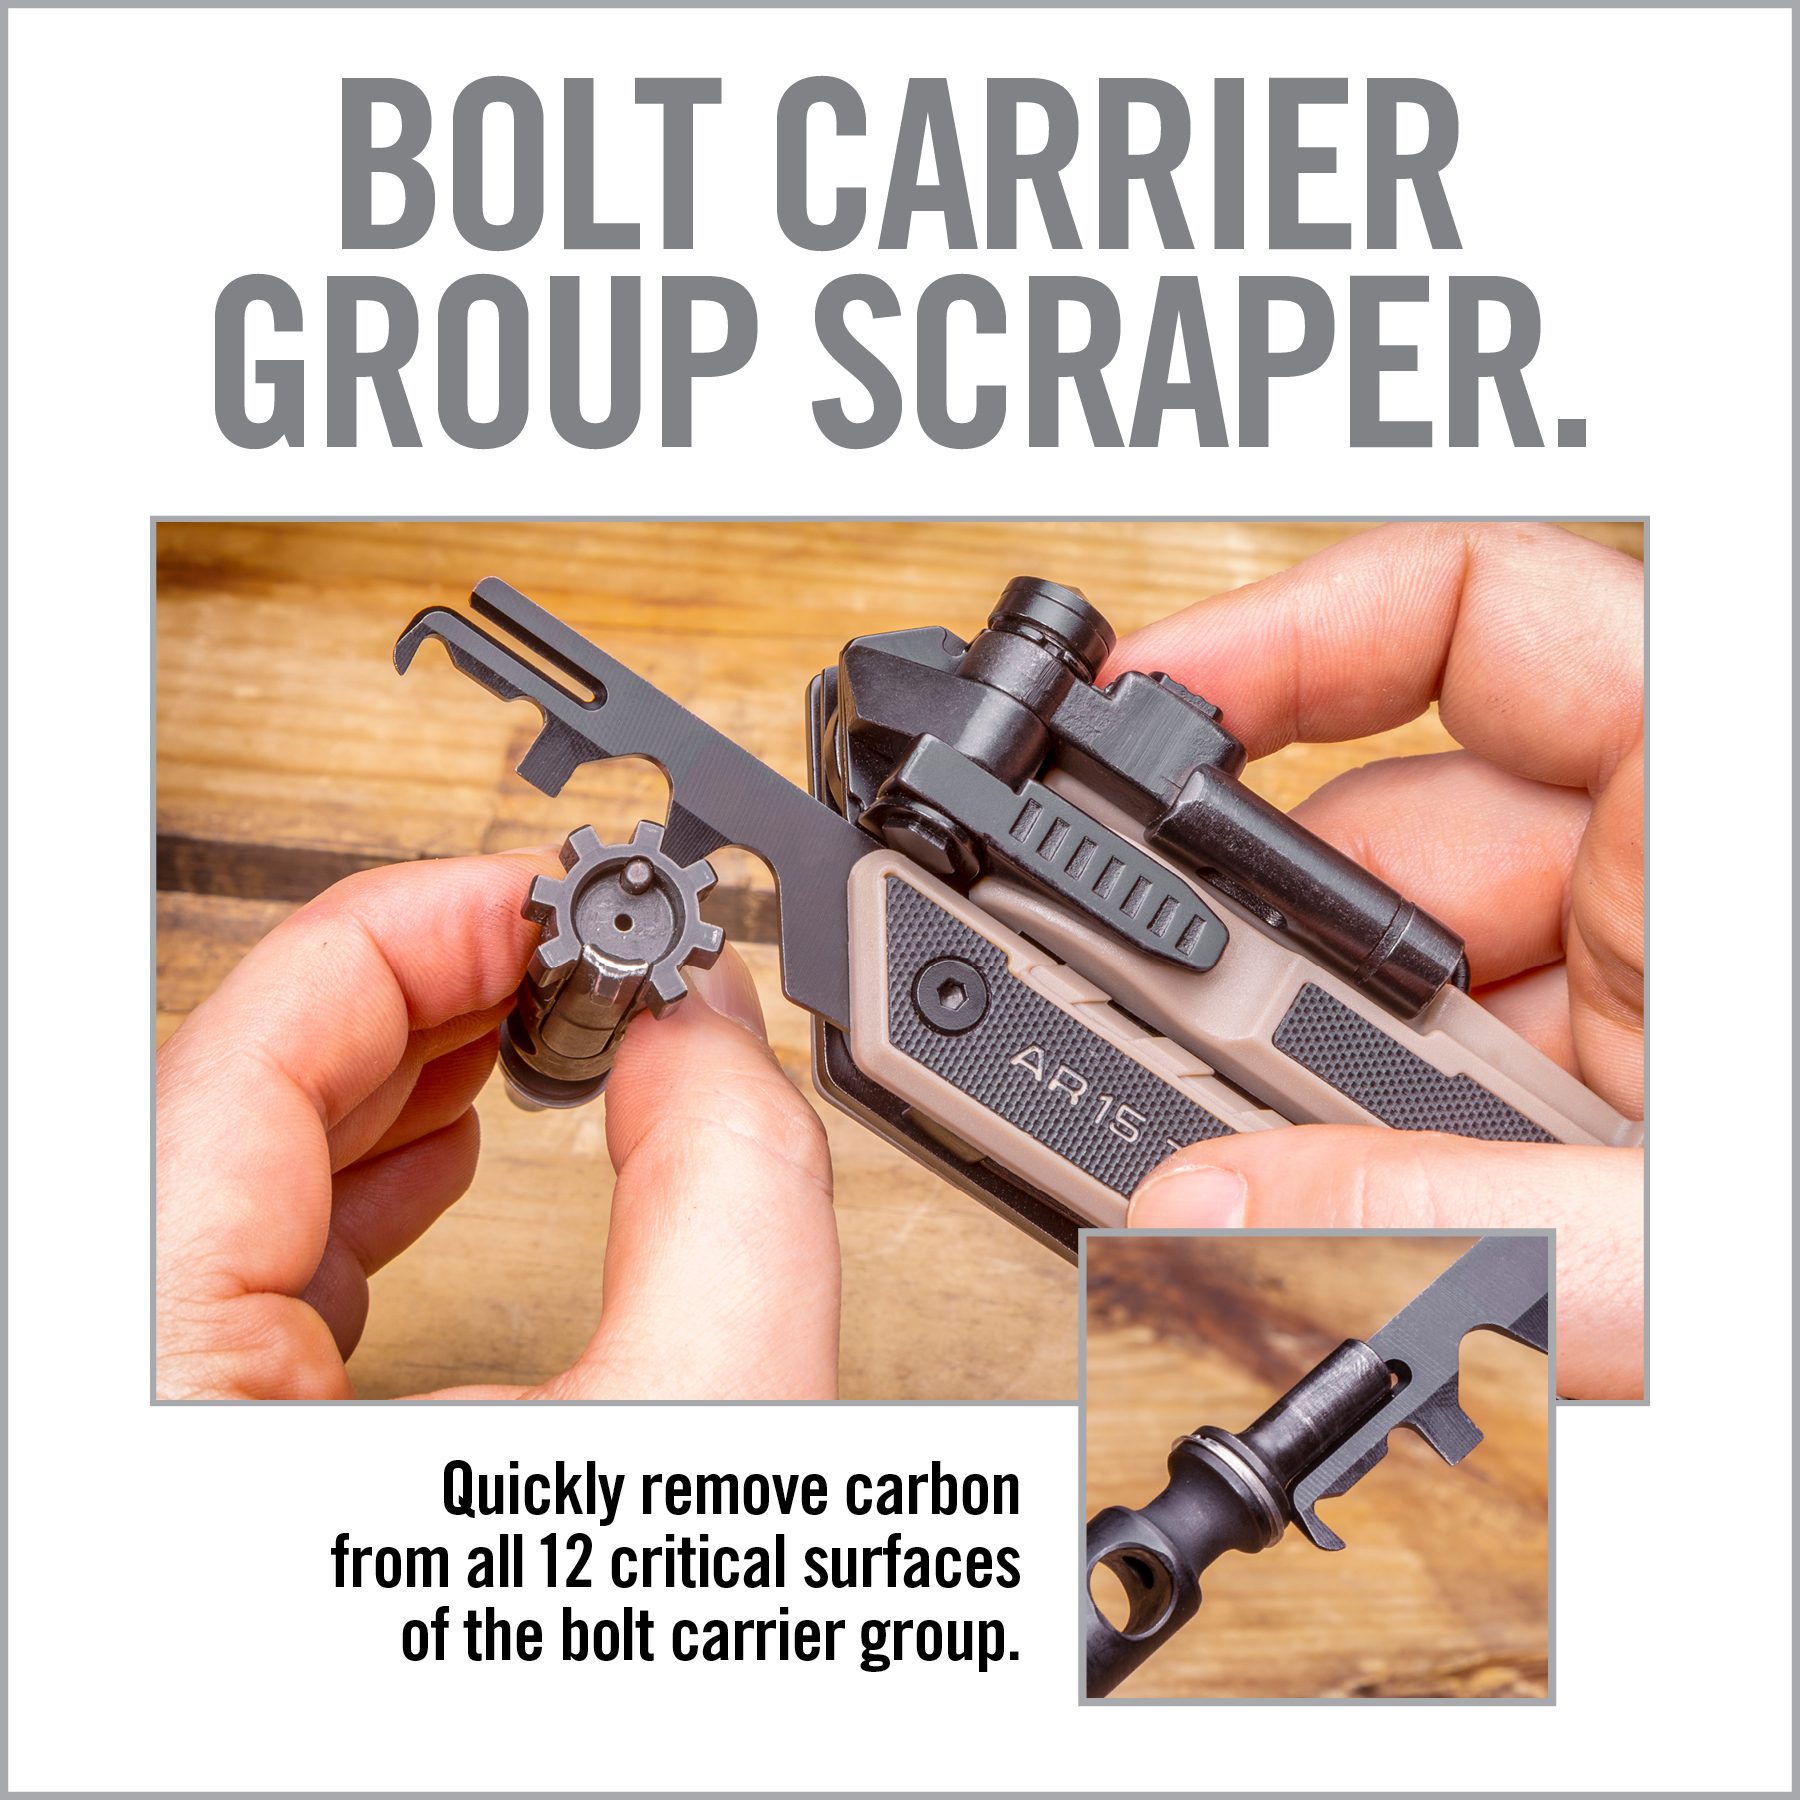 an advertisement for the bolt carrier group scraper